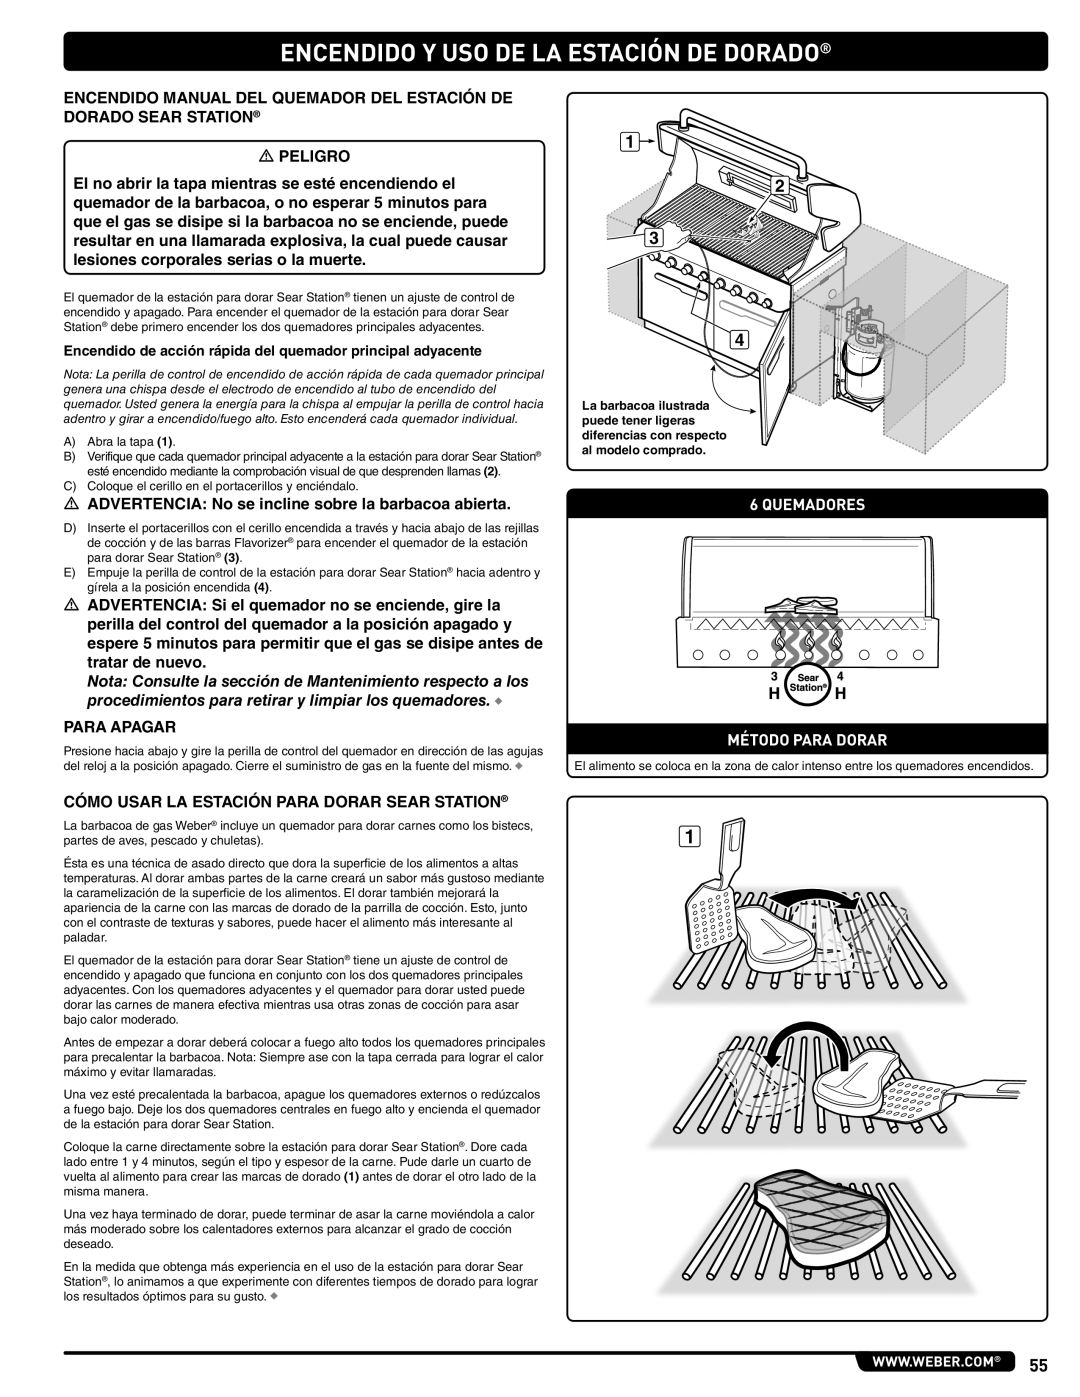 Weber 660- LP, Weber manual  Advertencia No se incline sobre la barbacoa abierta, Quemadores Método Para Dorar 